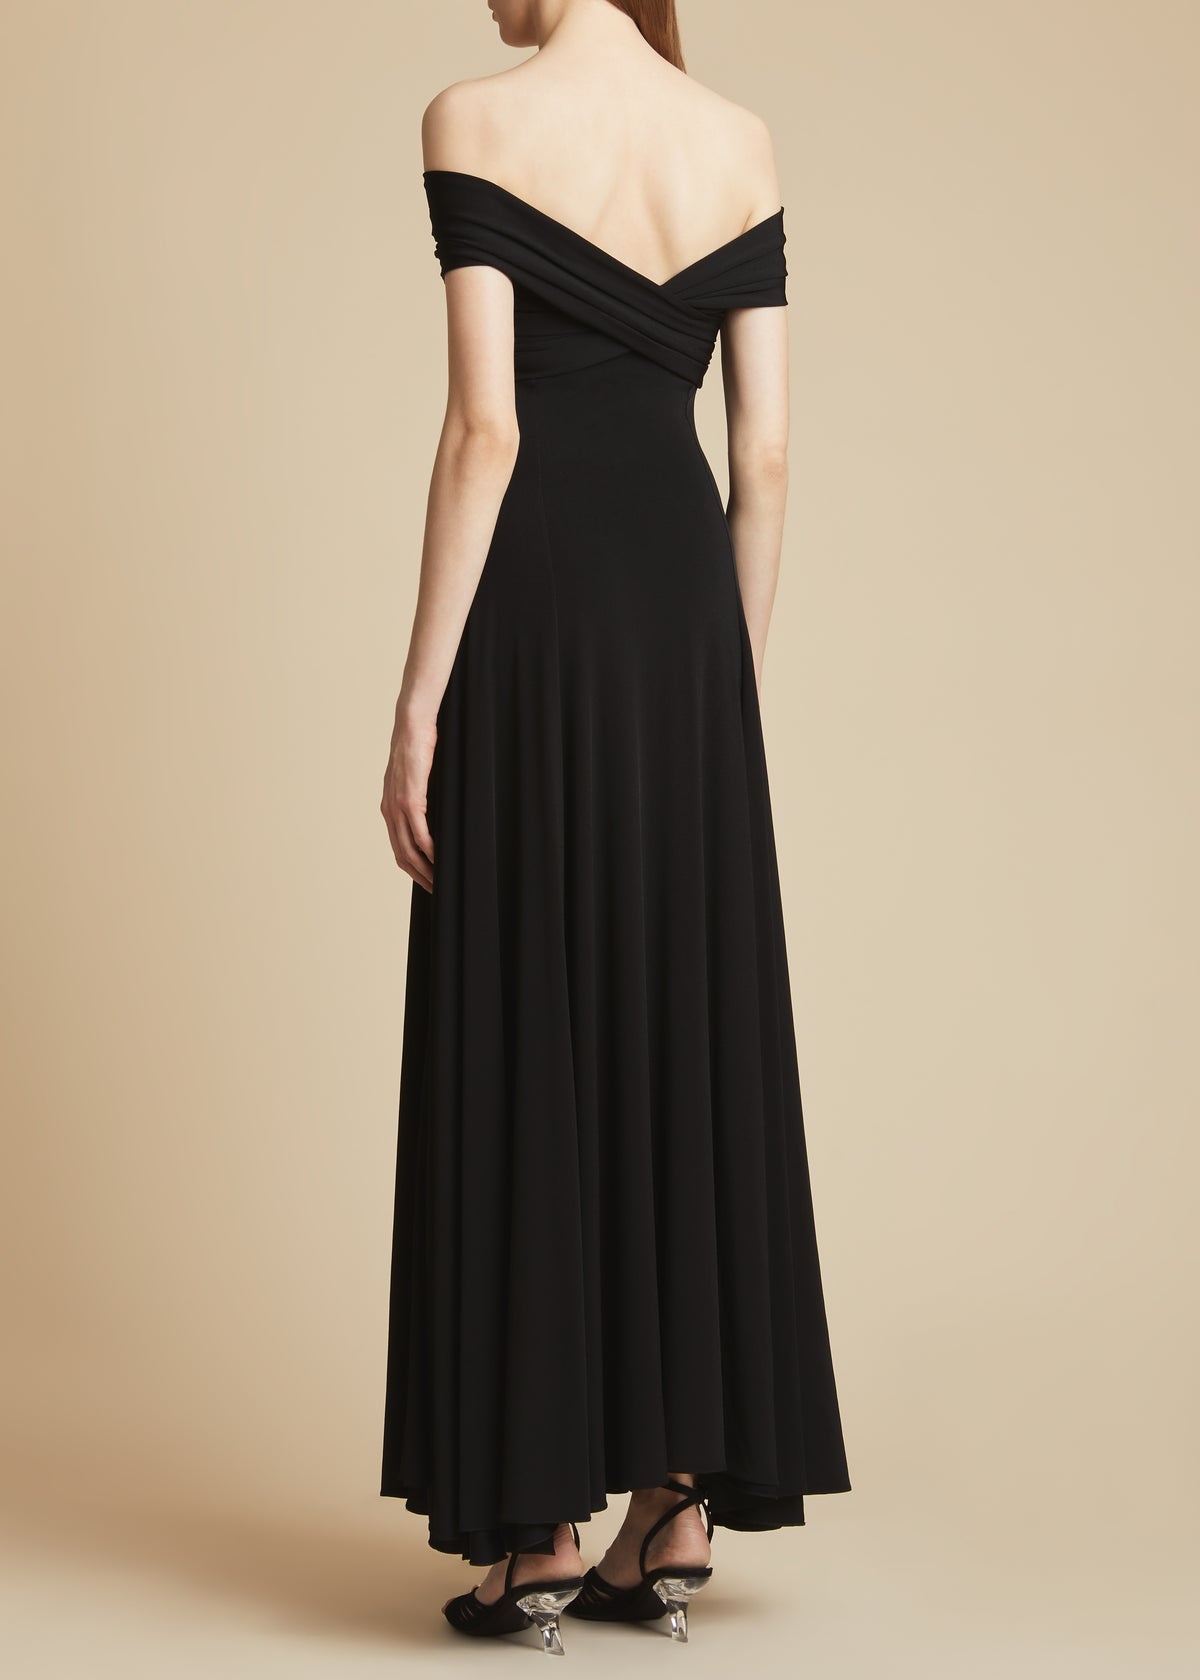 The Bruna Dress in Black - 3